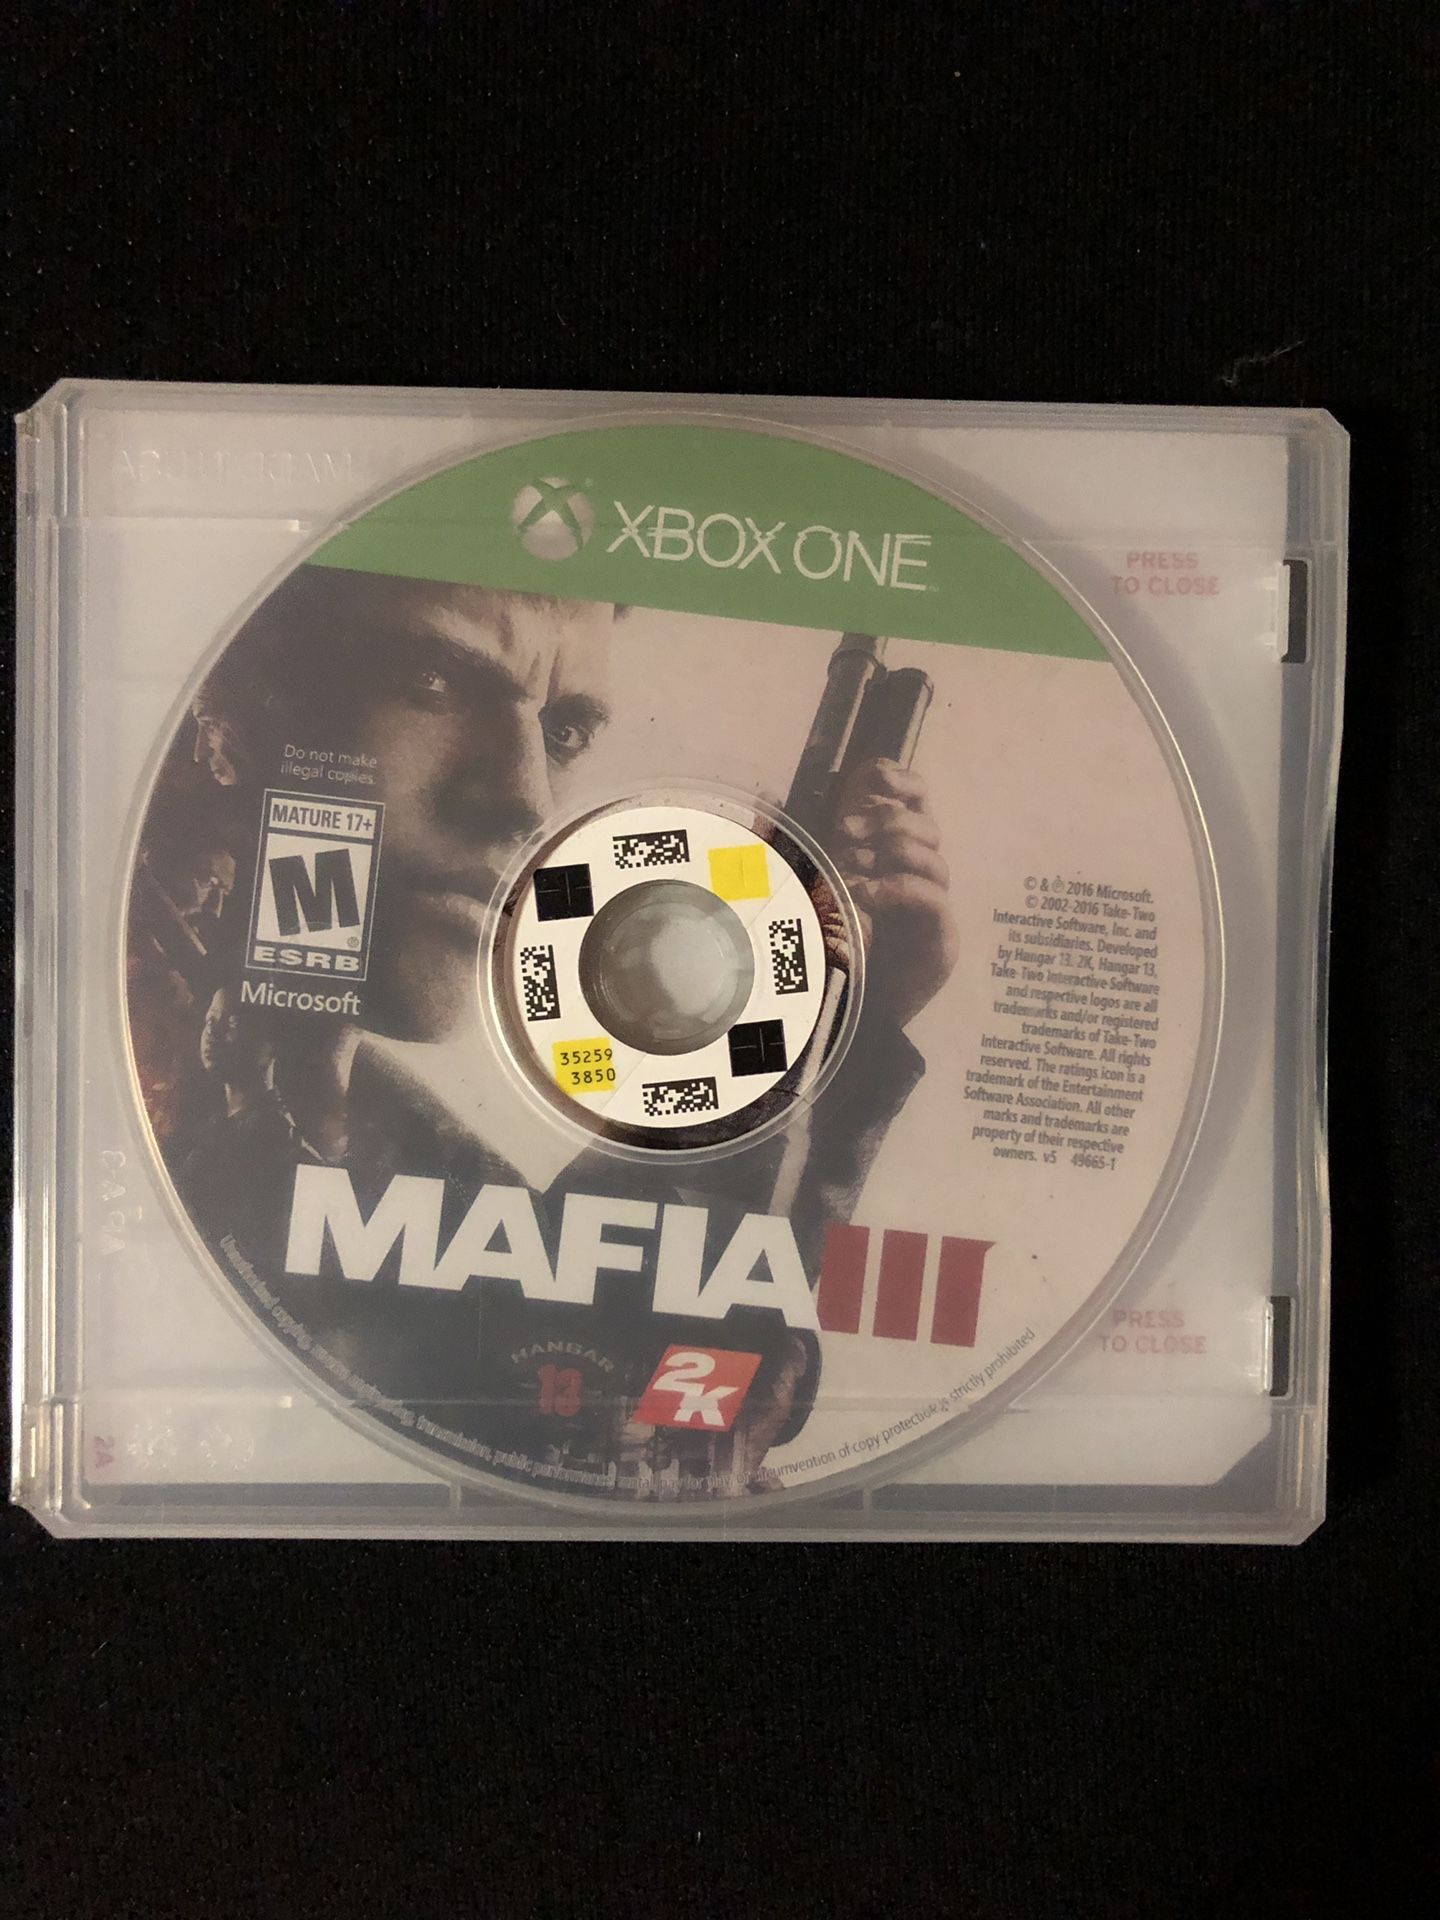 Mafia III Xbox one game in generic redbox case. Good condition. Mafia 3